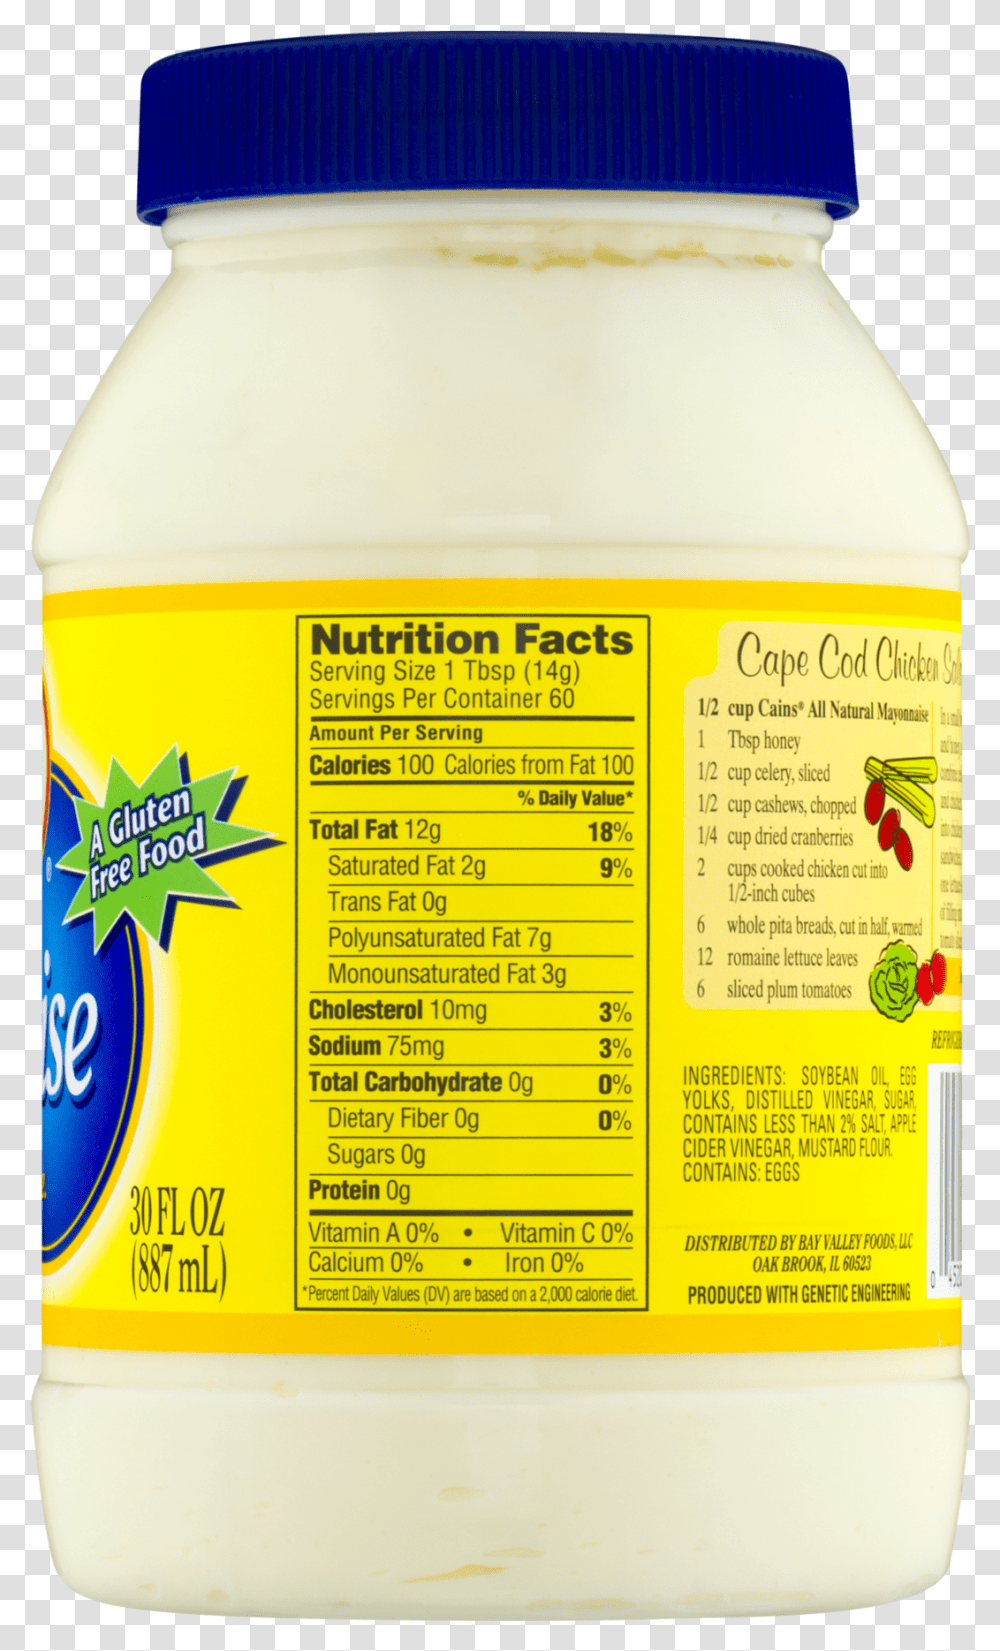 Sugar Free Mayo Nutrition Facts, Mayonnaise, Food, Menu Transparent Png